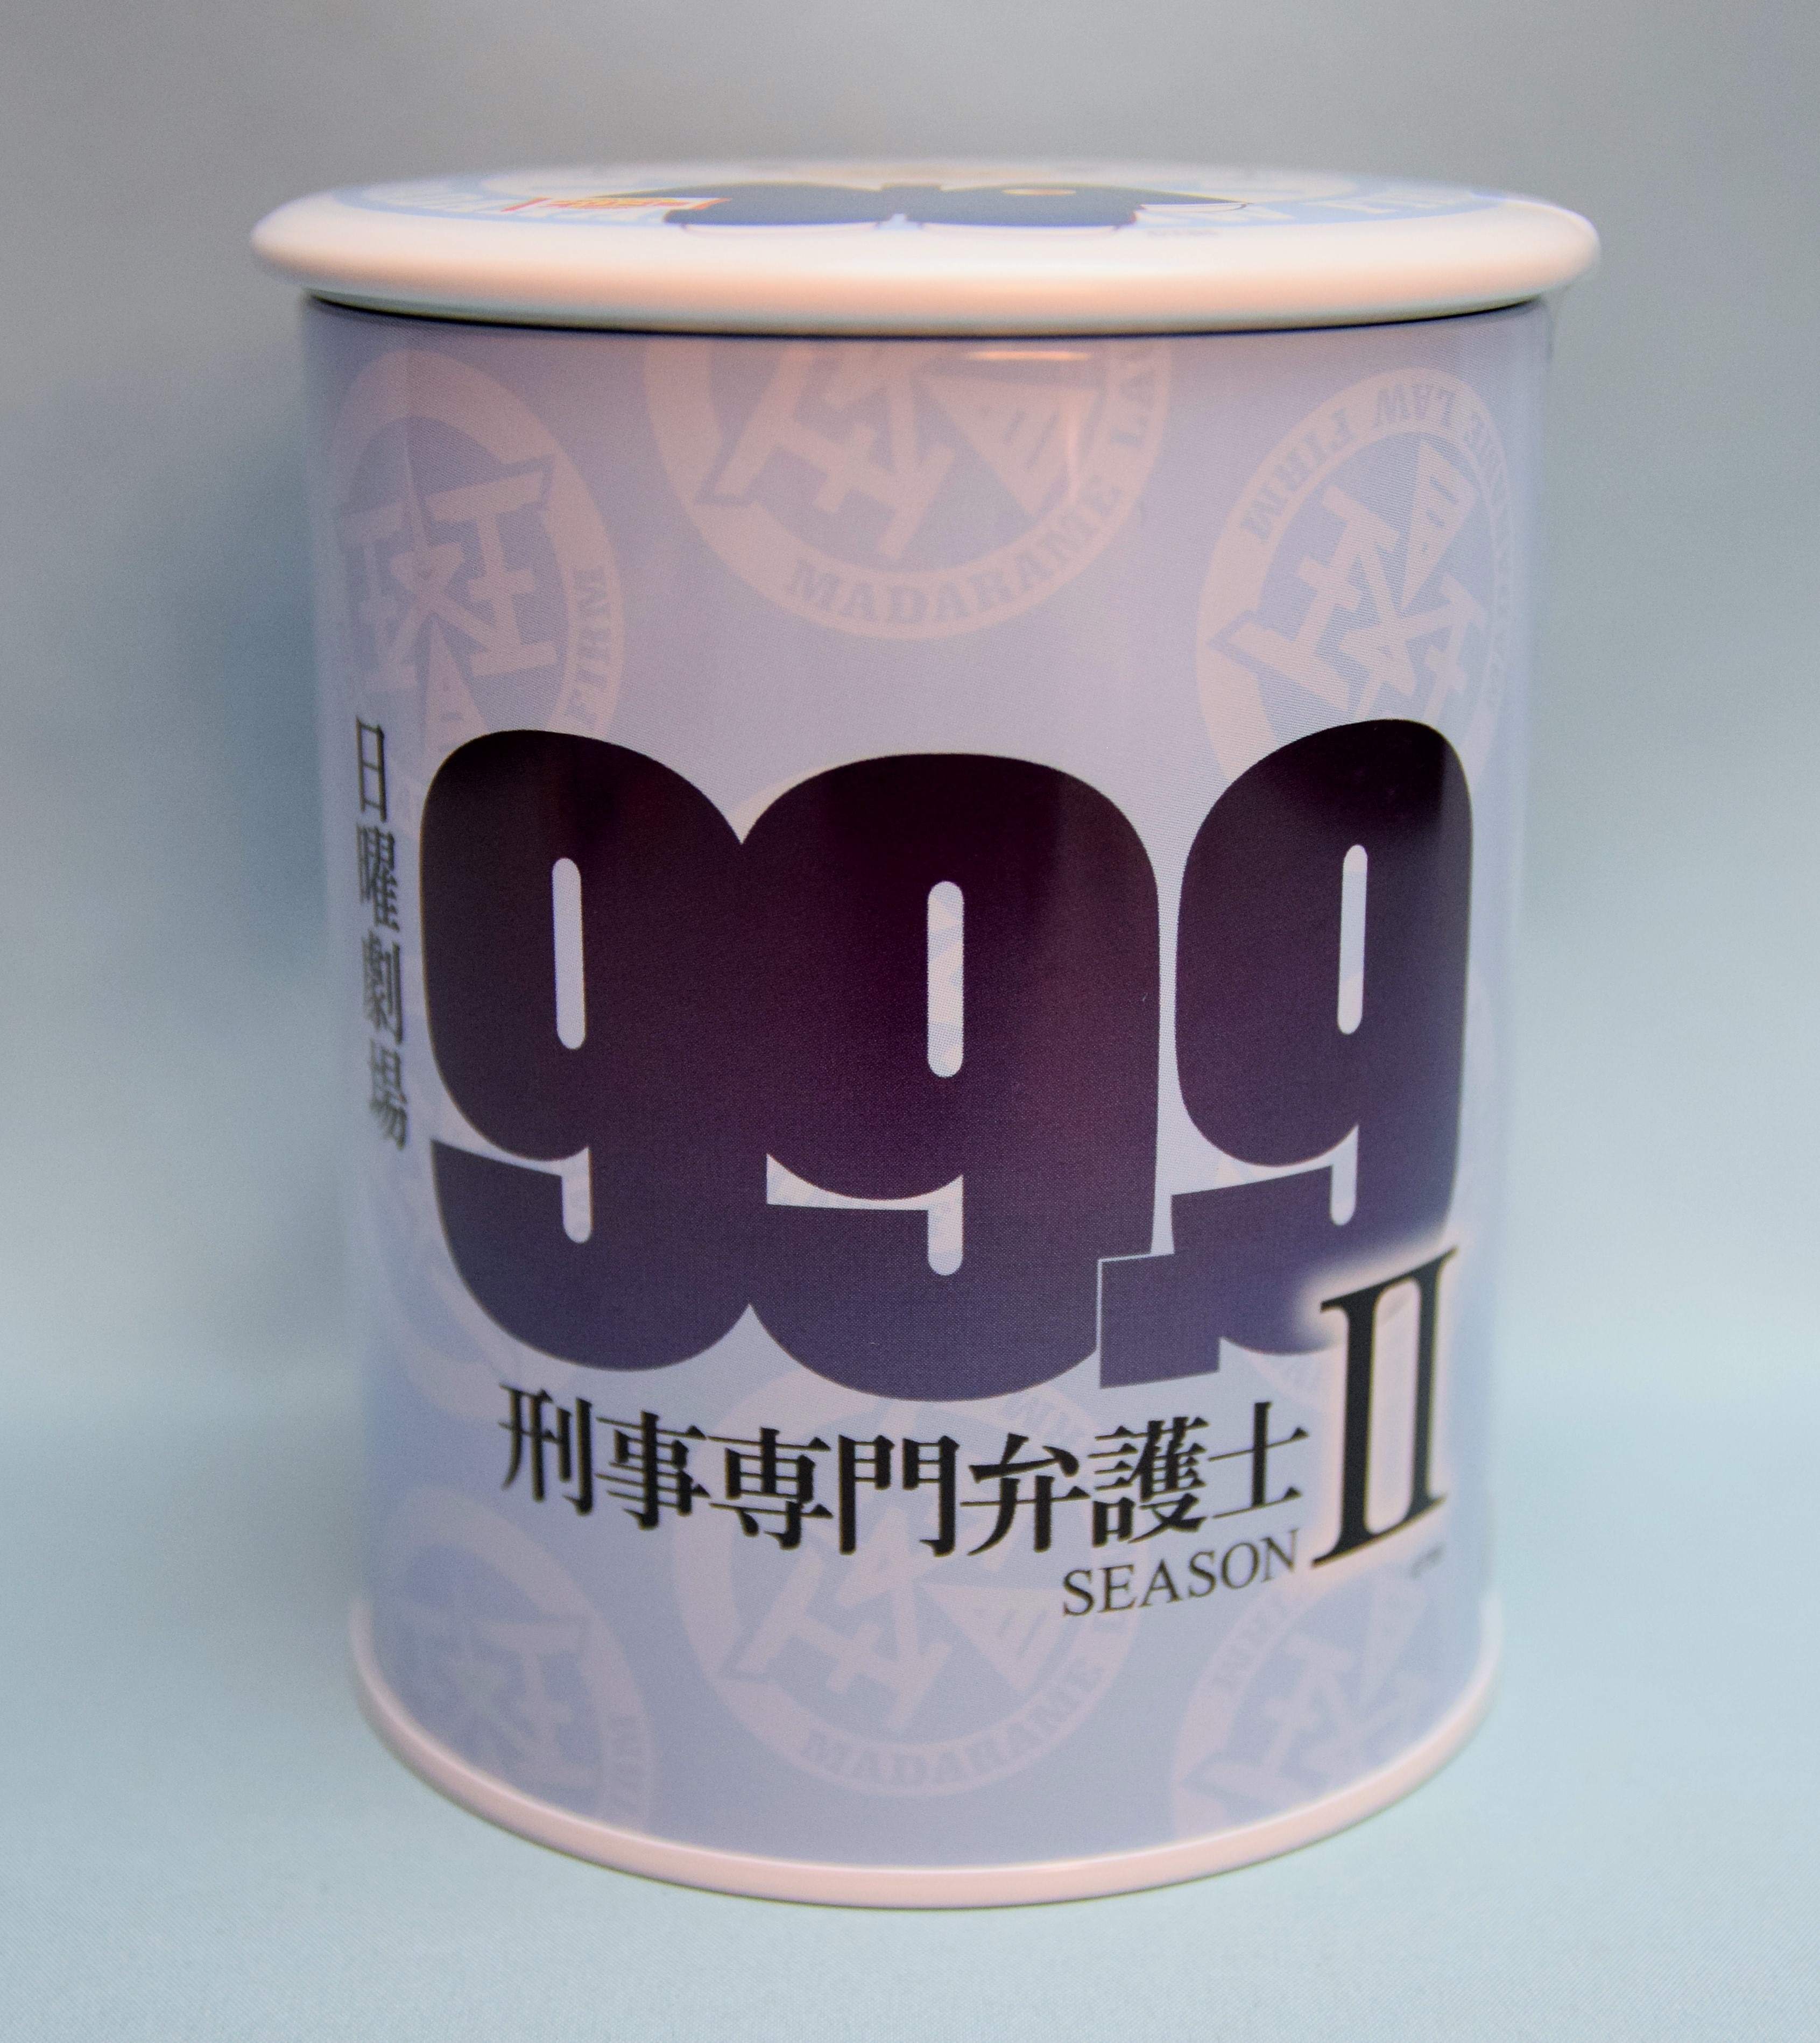 嵐 99 9刑事専門弁護士season2 松本潤 深山の飴缶 マグネット付き まんだらけ Mandarake